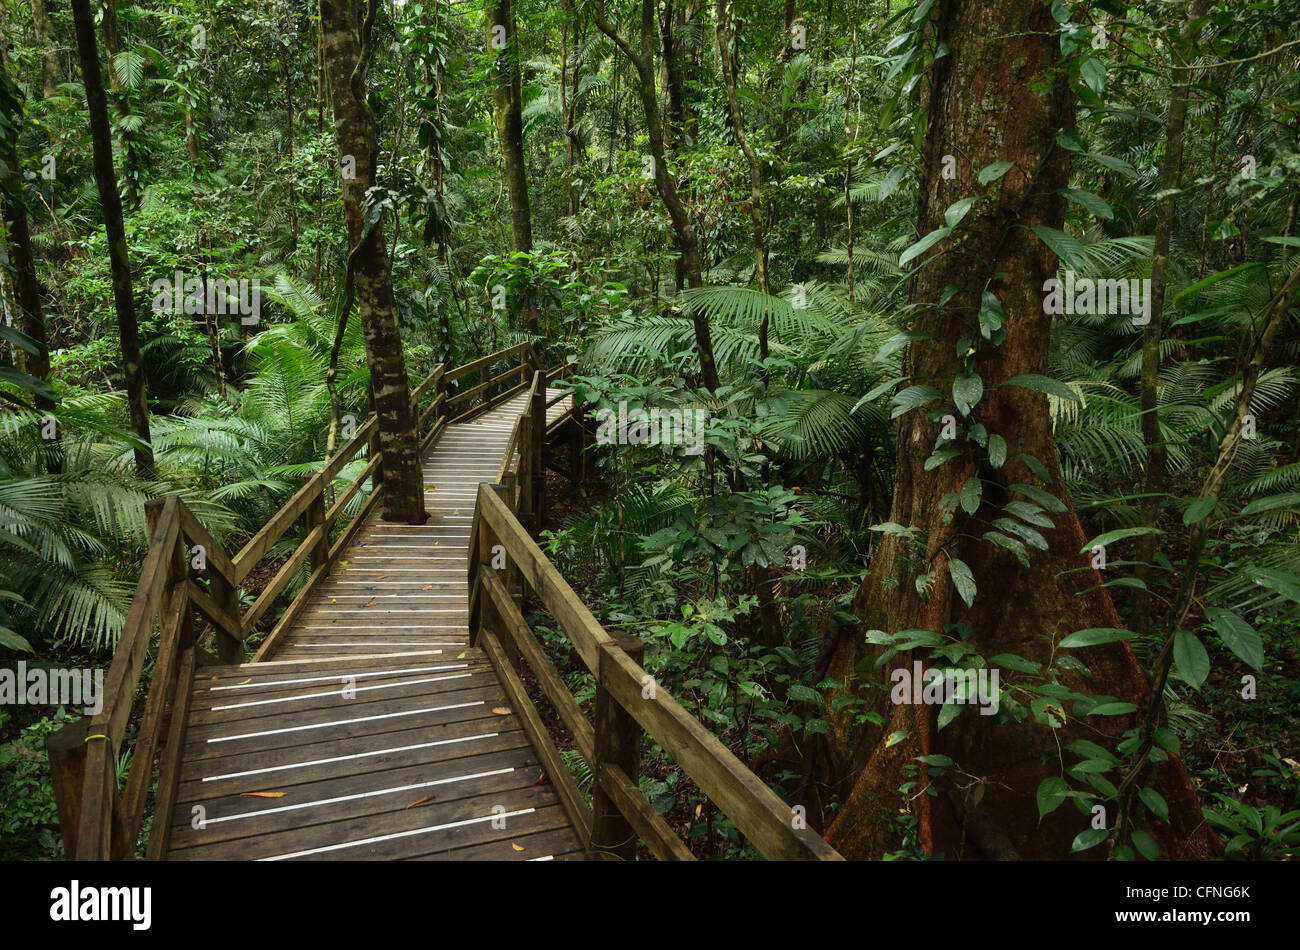 Grâce à la promenade, la forêt tropicale du Parc national de Daintree, UNESCO World Heritage Site, Queensland, Australie, Pacifique Banque D'Images